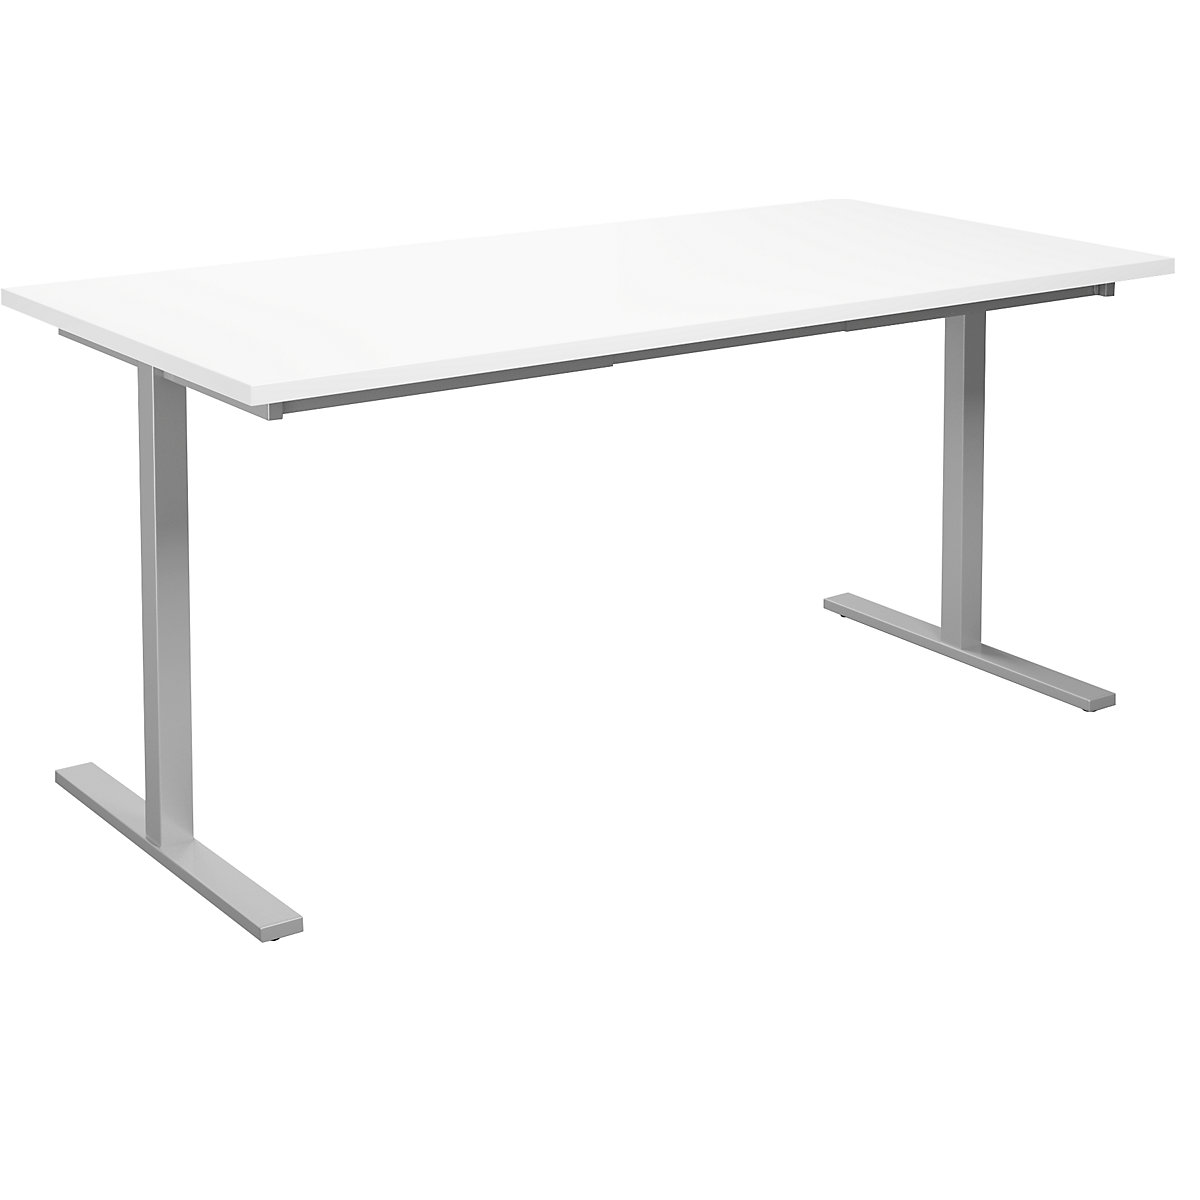 DUO-T multi-purpose desk, straight tabletop, WxD 1600 x 800 mm, white, silver-10